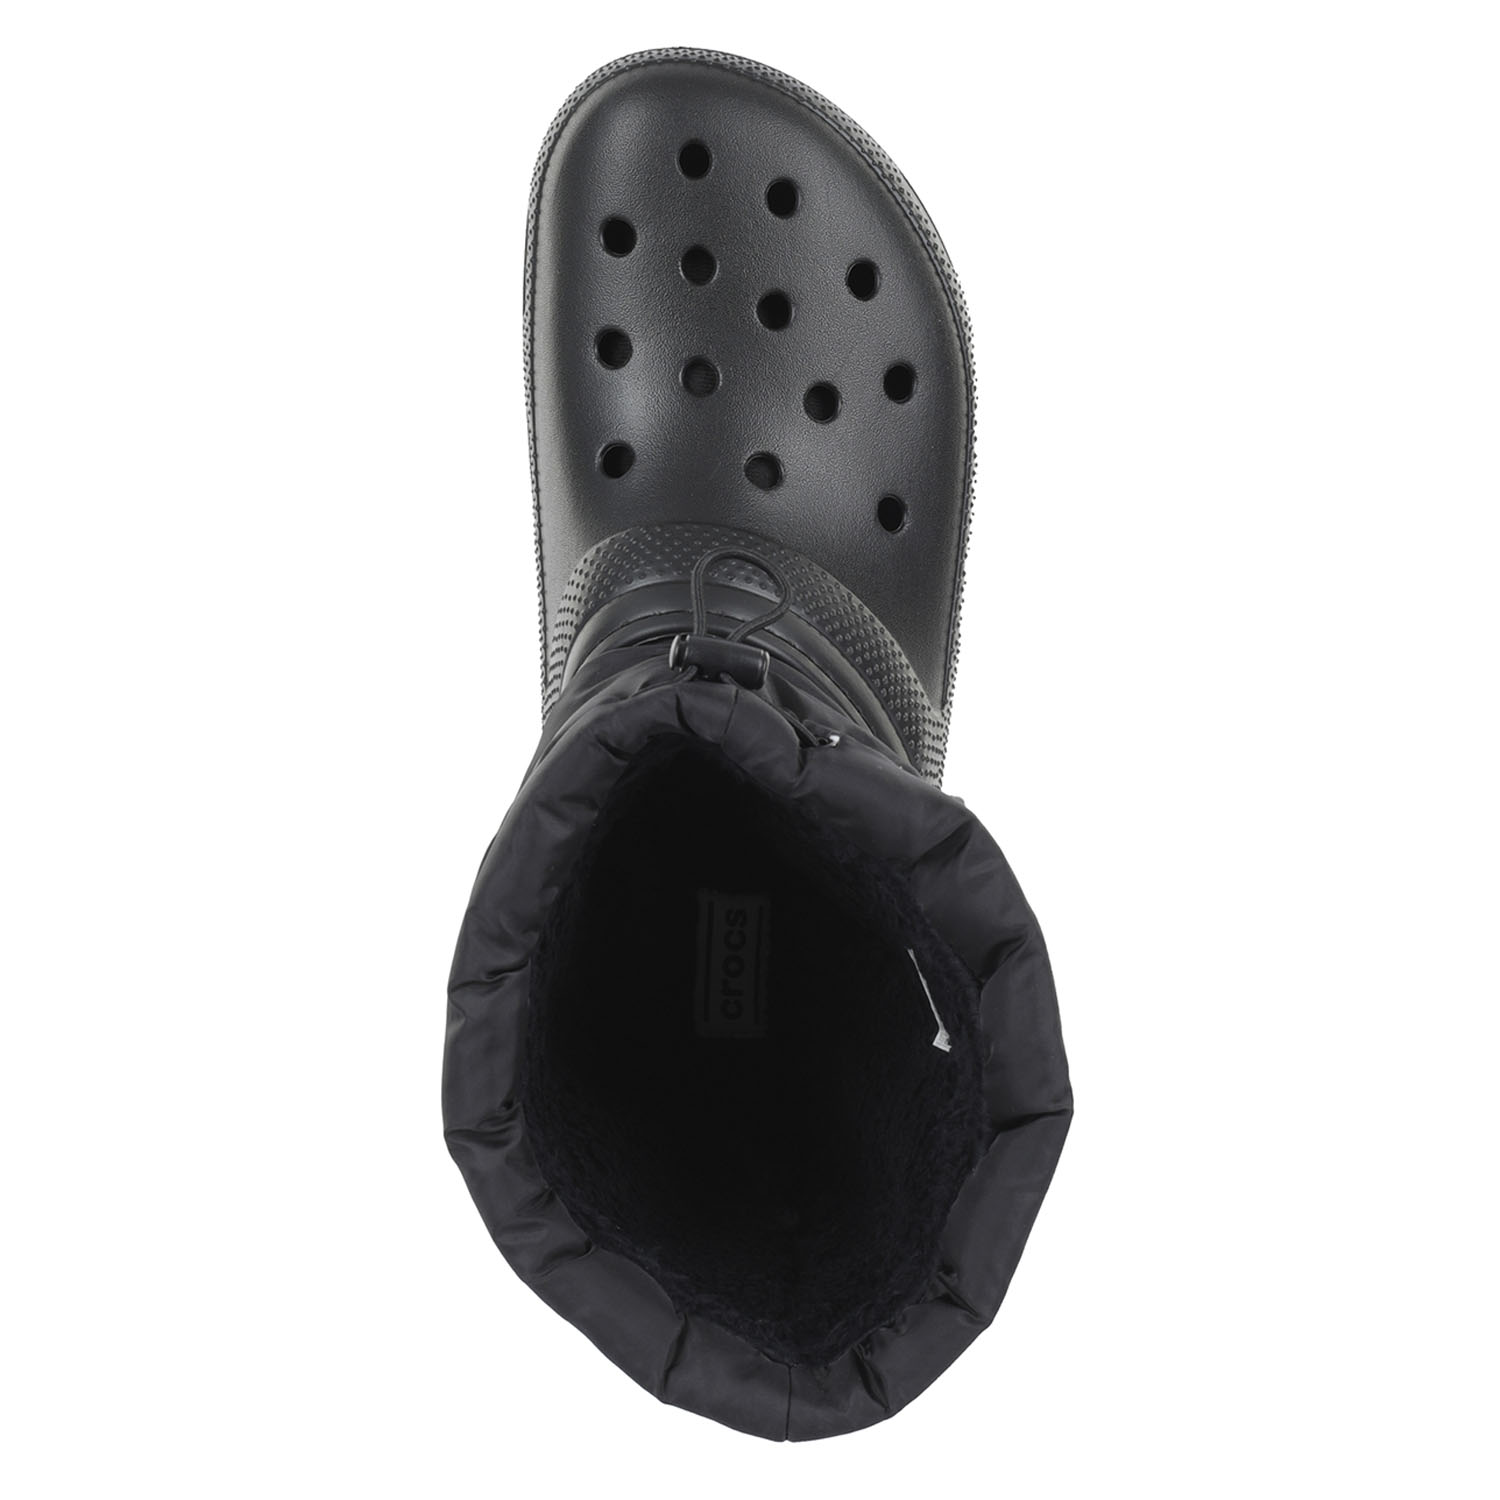 Сапоги Crocs Classic Lined Neo Puff Boot Black/Black